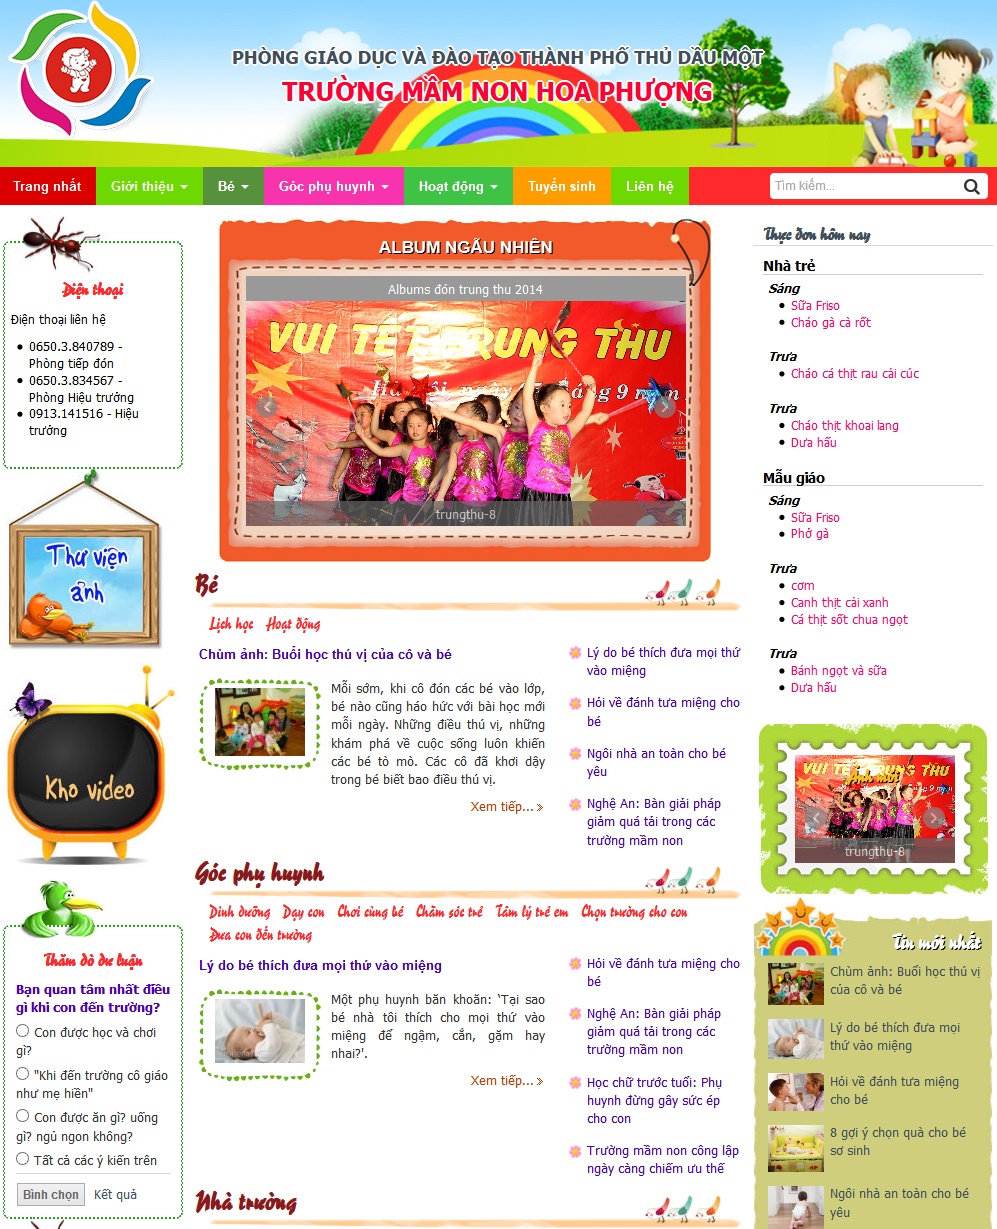 Website trường mầm non Hoa Phượng, thành phố Thủ Dầu Một